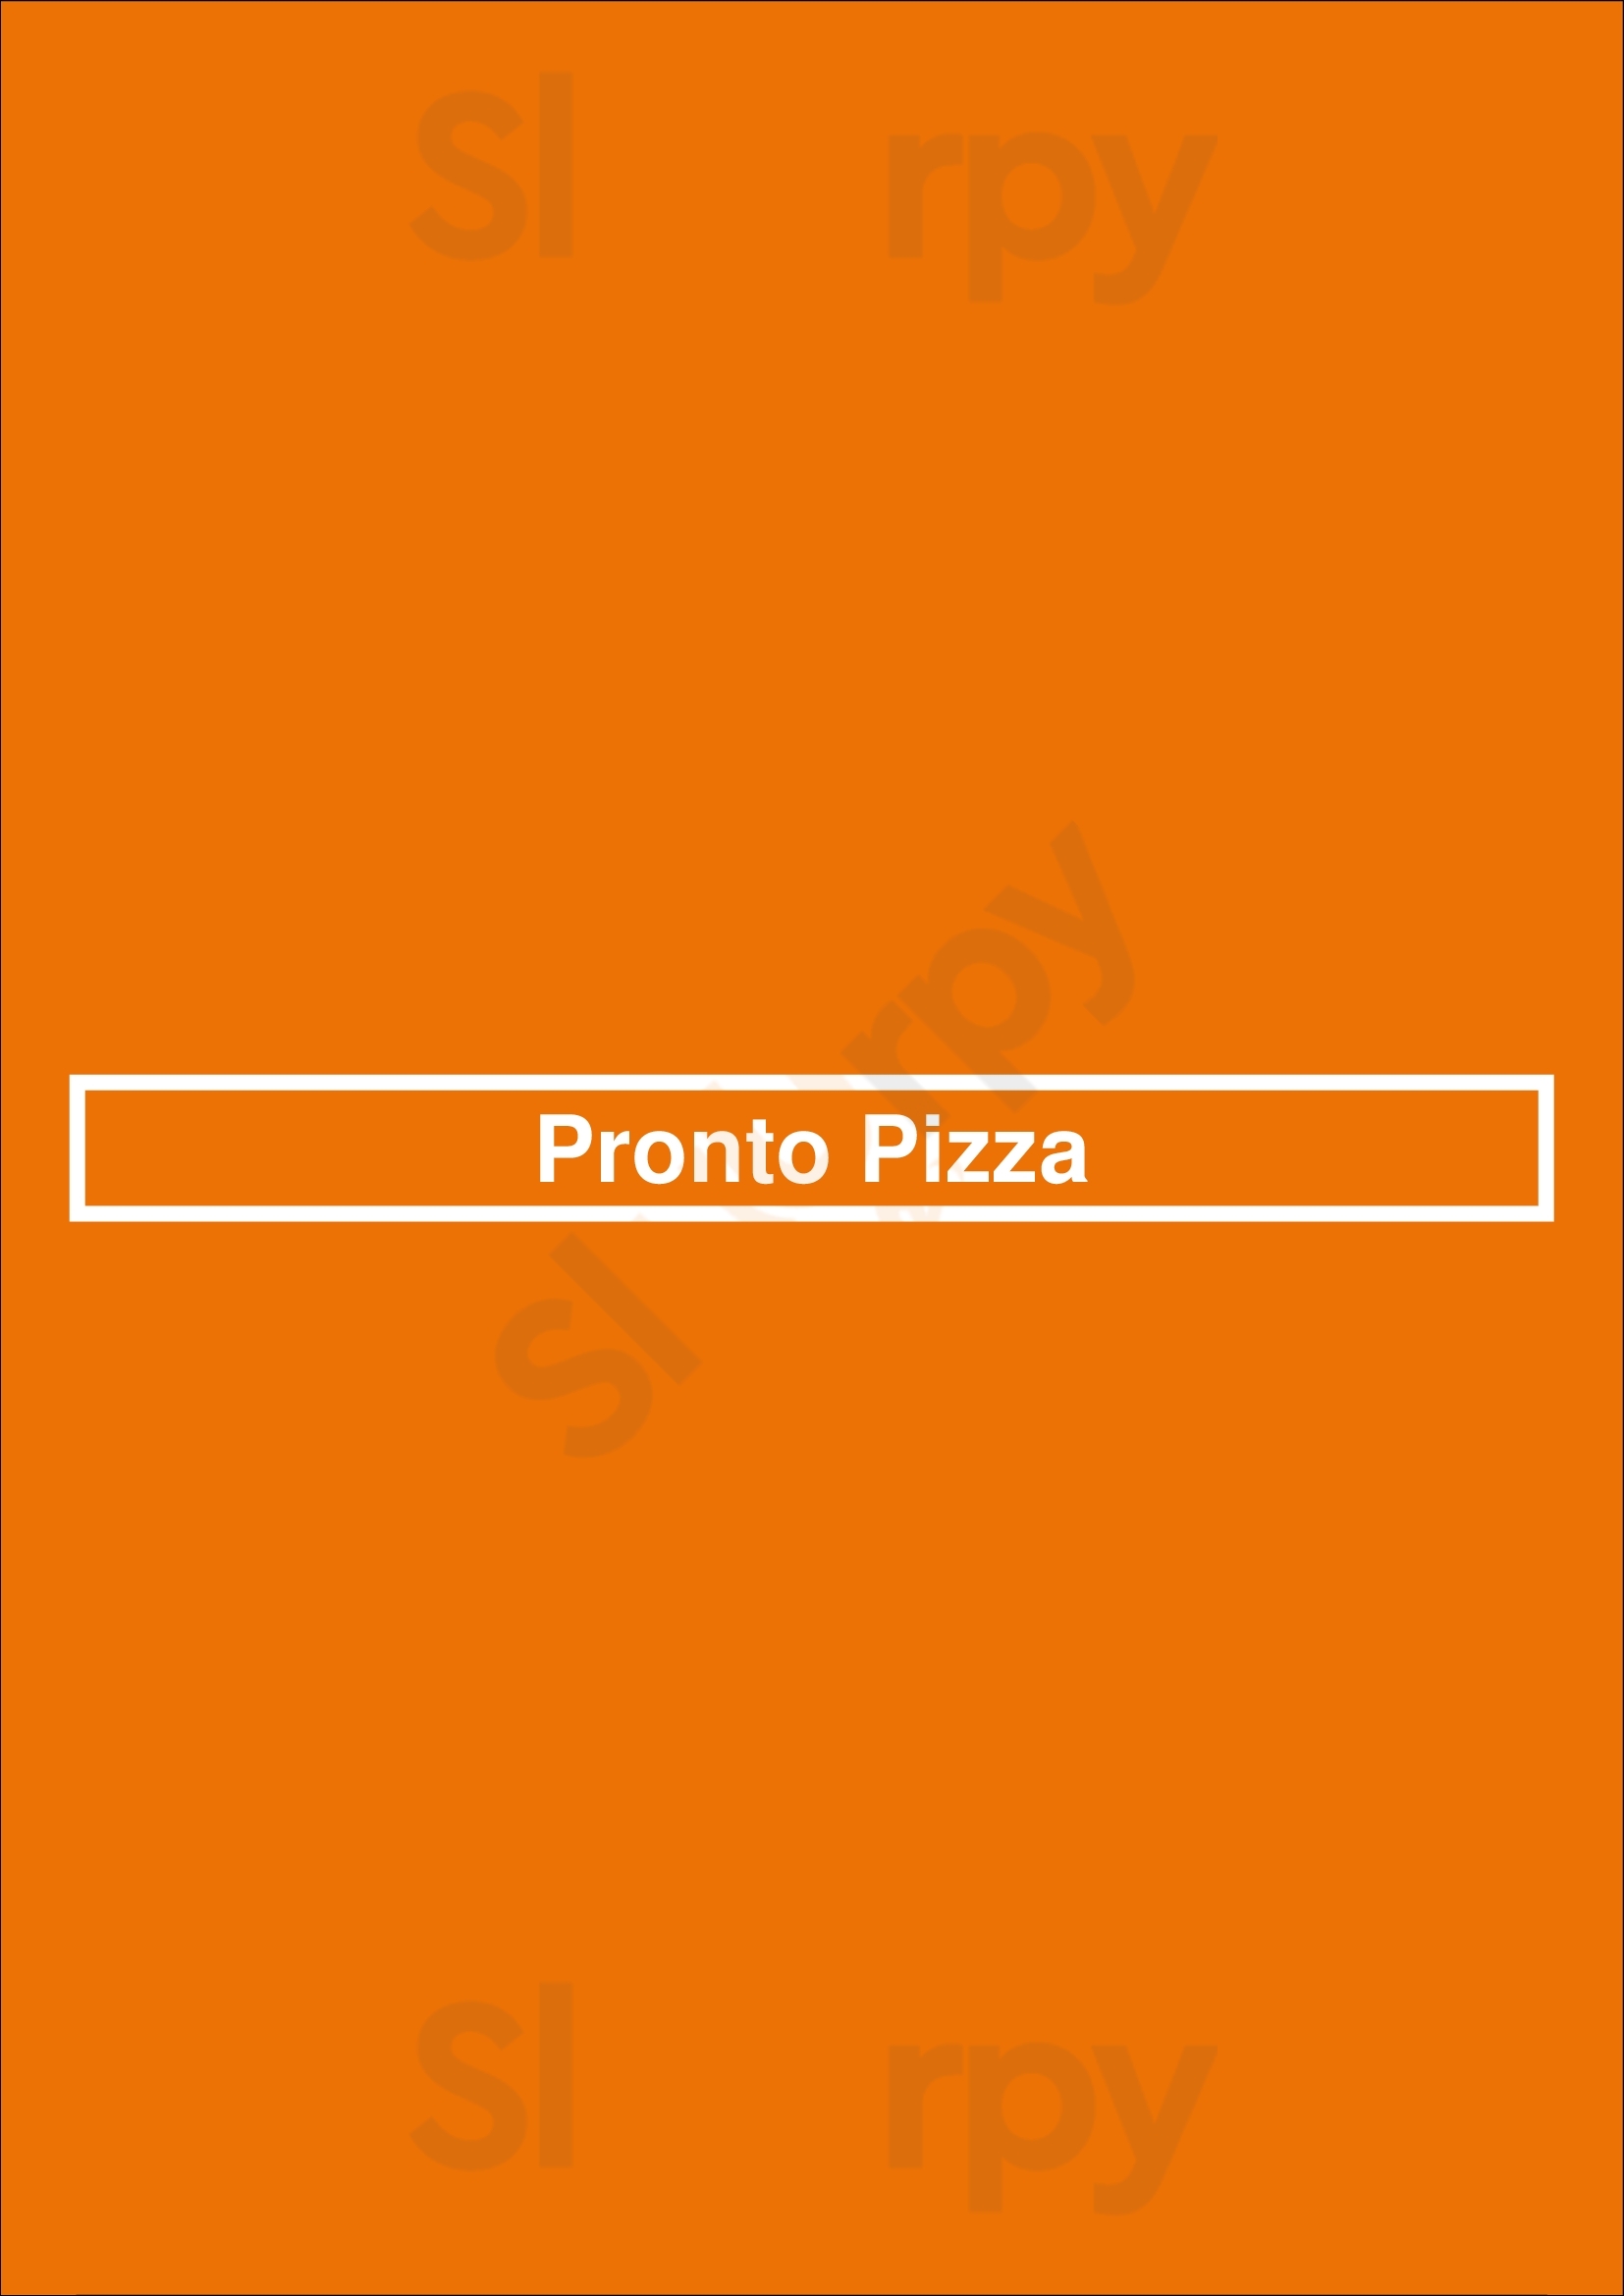 Pronto Pizza Los Angeles Menu - 1